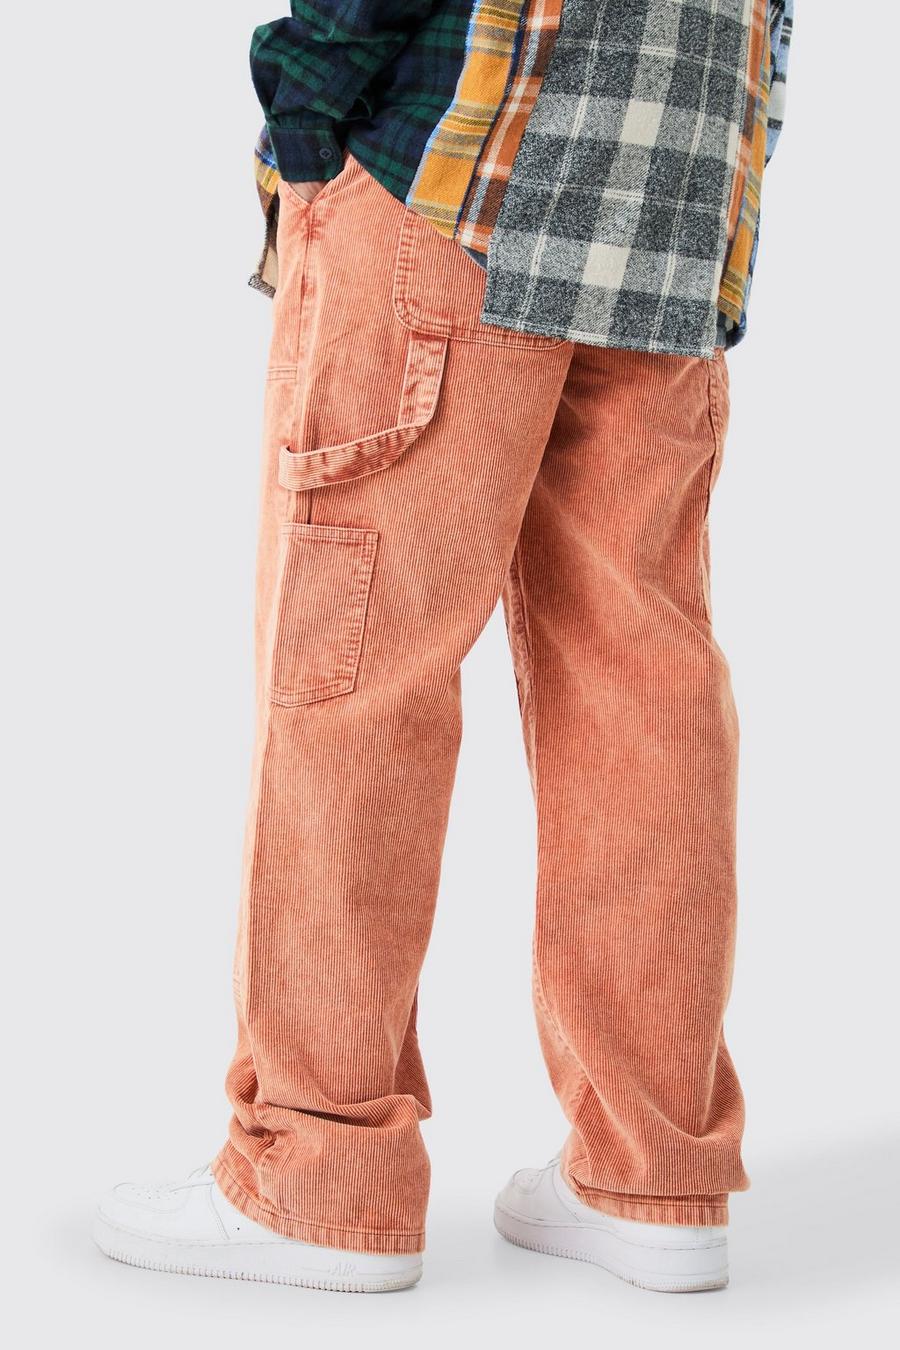 Pantaloni extra comodi Carpenter in velluto a coste in velluto a coste color arancione bruciato, Burnt orange